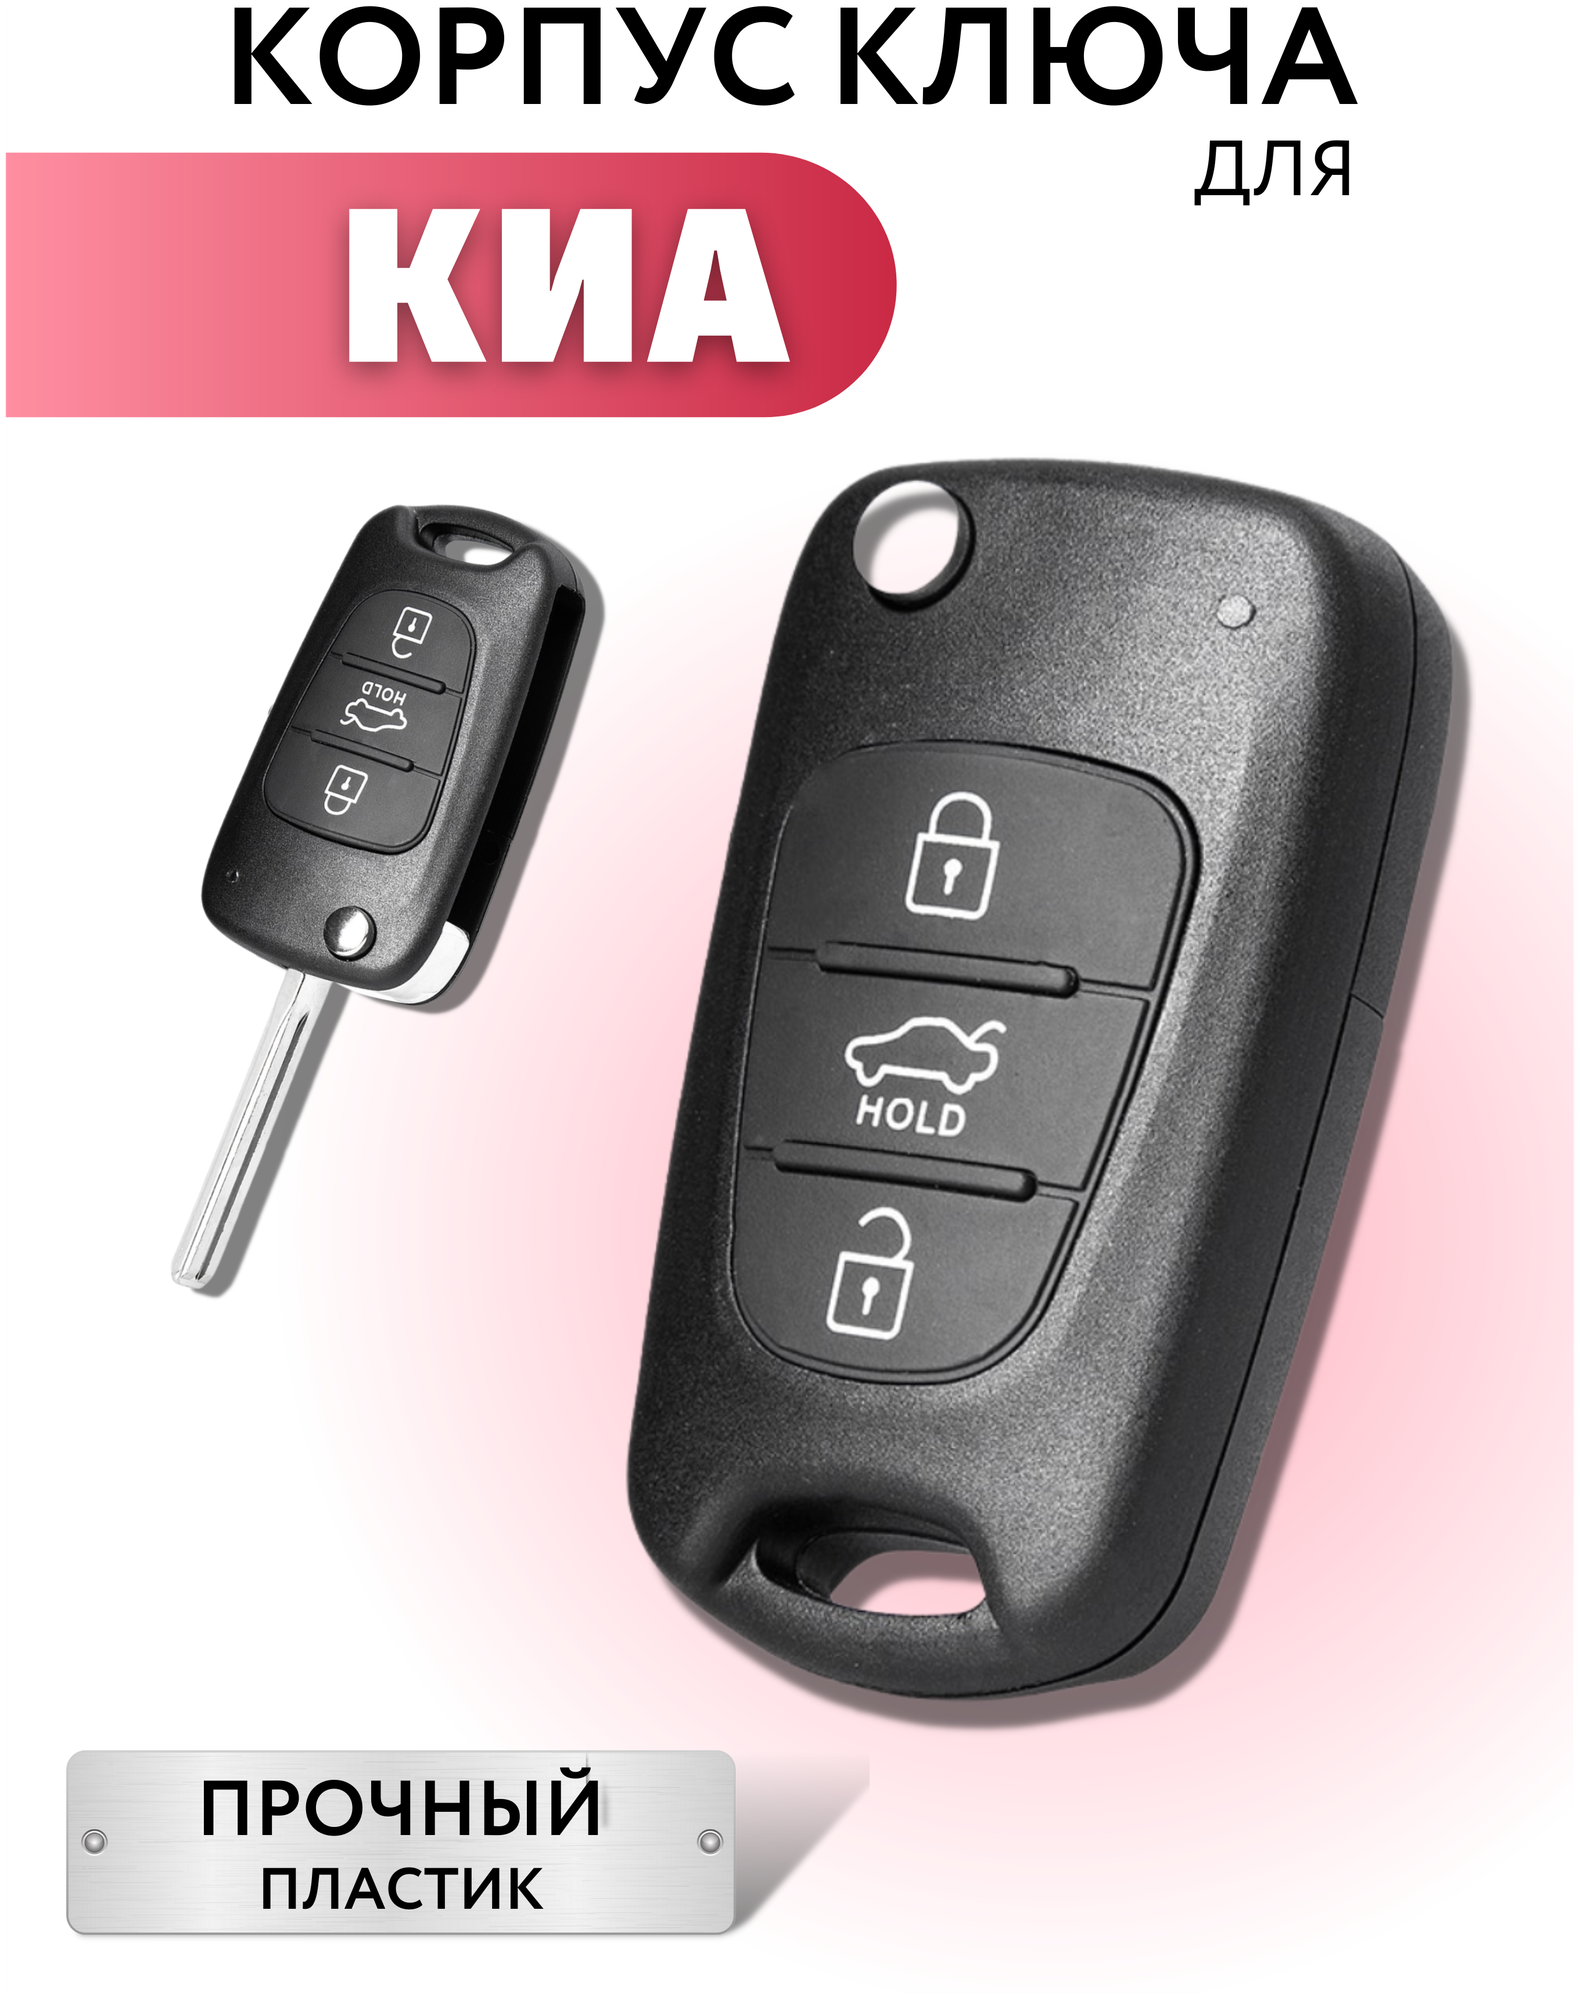 Корпус для выкидного ключа зажигания KИА РИО СИД корпус ключа для KIA RIO CEED SPORTEGE SORENTO 3 кнопки